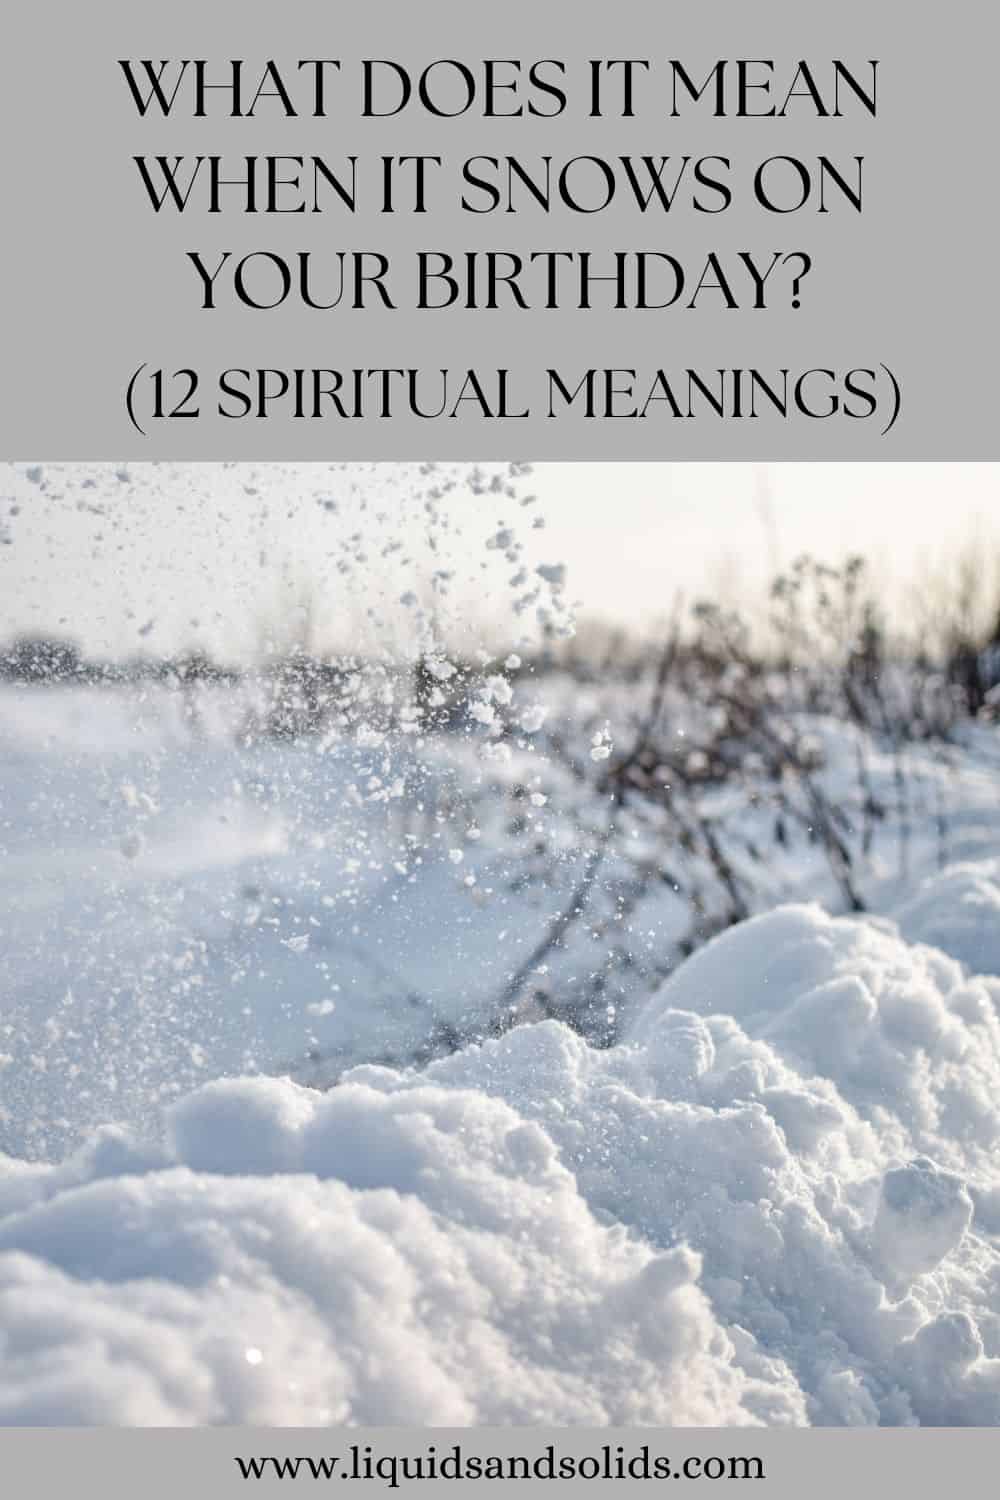  რას ნიშნავს, როცა შენს დაბადების დღეზე თოვს? (12 სულიერი მნიშვნელობა)